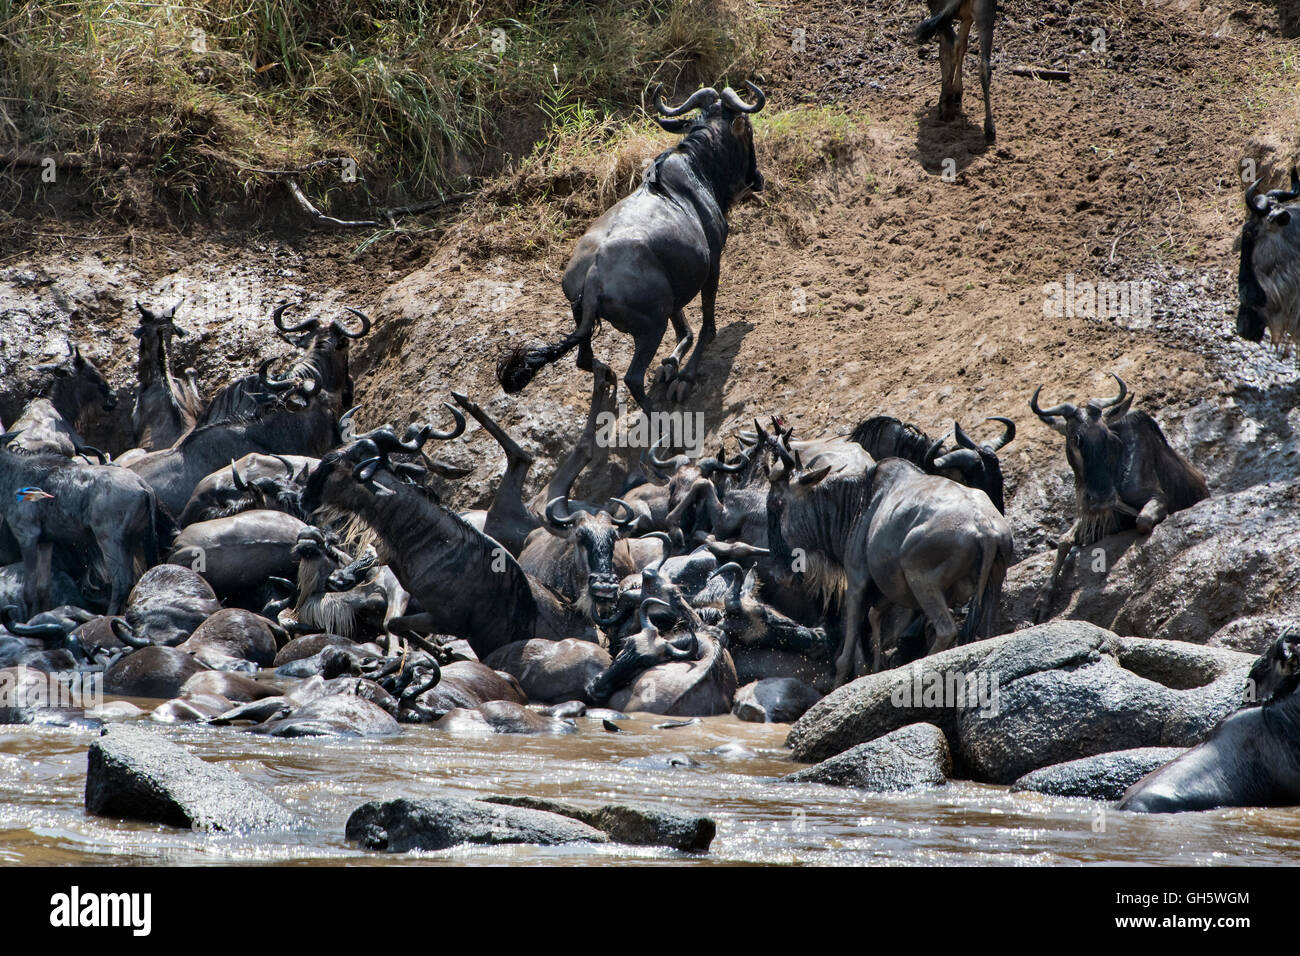 Tanzania, Serengeti NP, Wildebeests, Connochaetes taurinus Stock Photo